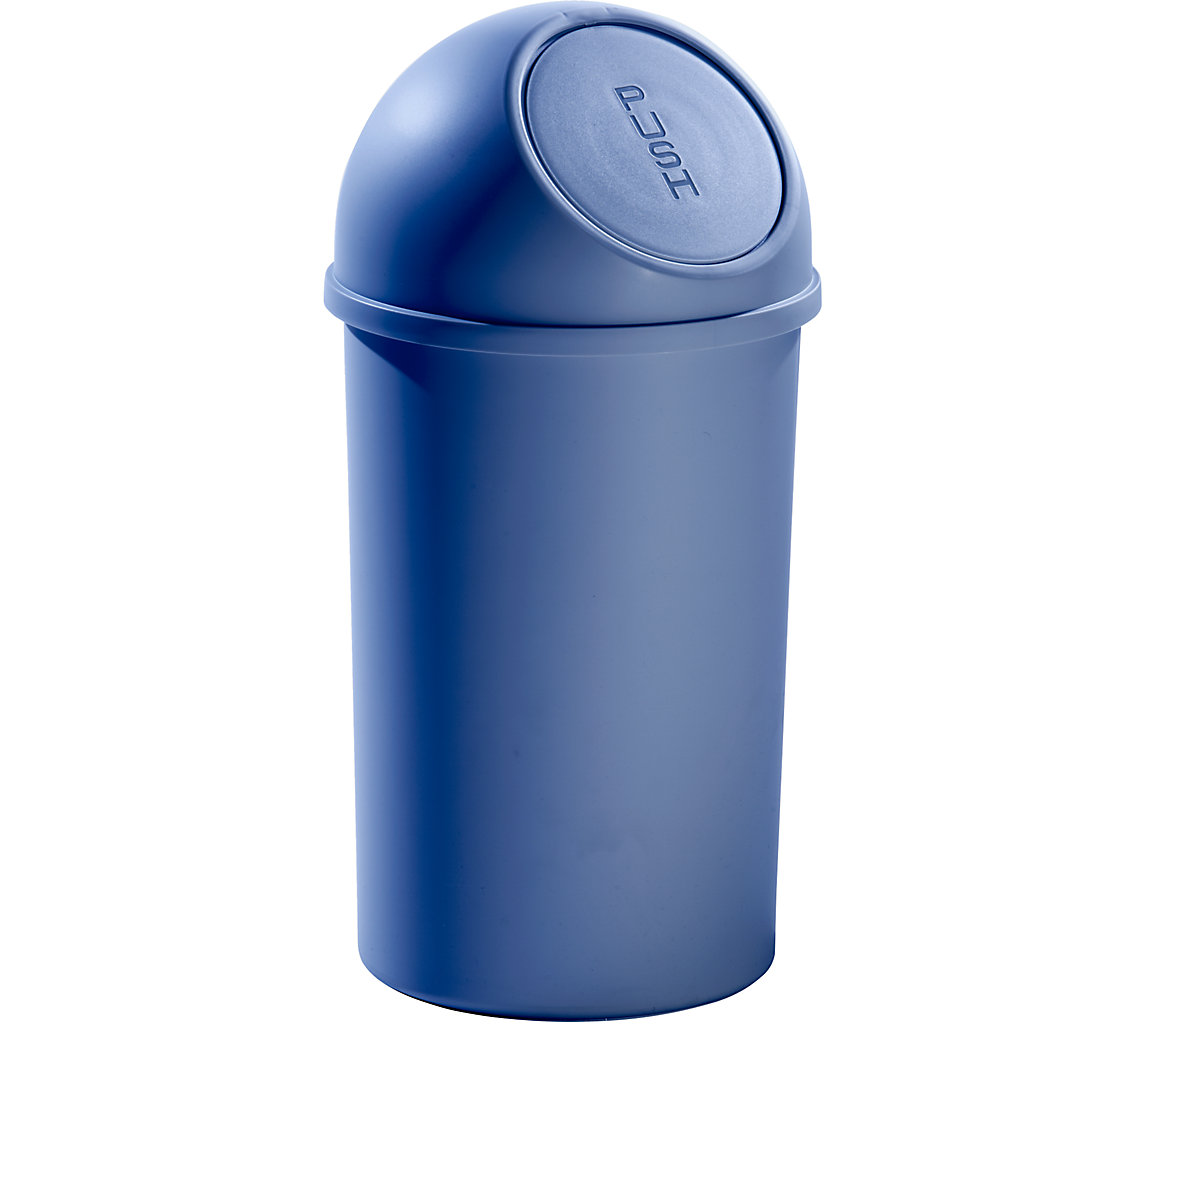 helit – Samozavírací nádoba na odpadky z plastu, objem 25 l, v x Ø 615 x 315 mm, modrá, bal.j. 3 ks